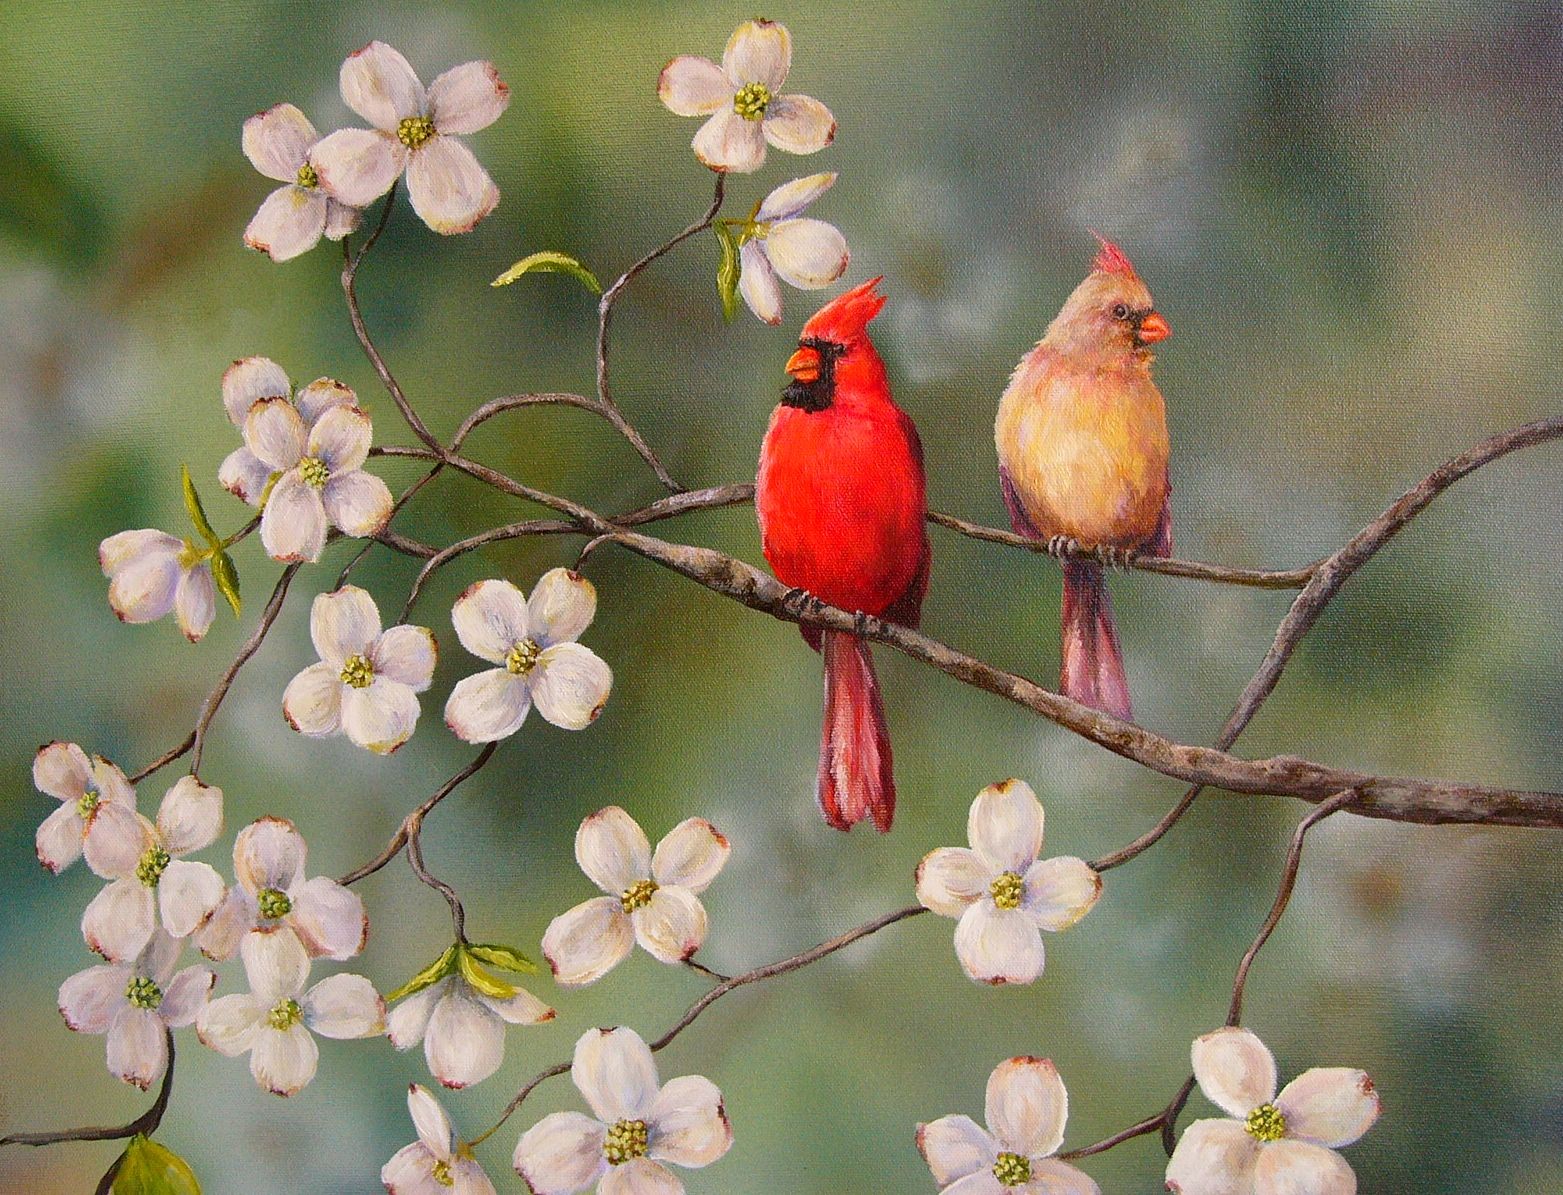  query spring birds and flowers cherry blossom tattoo cardinal bird